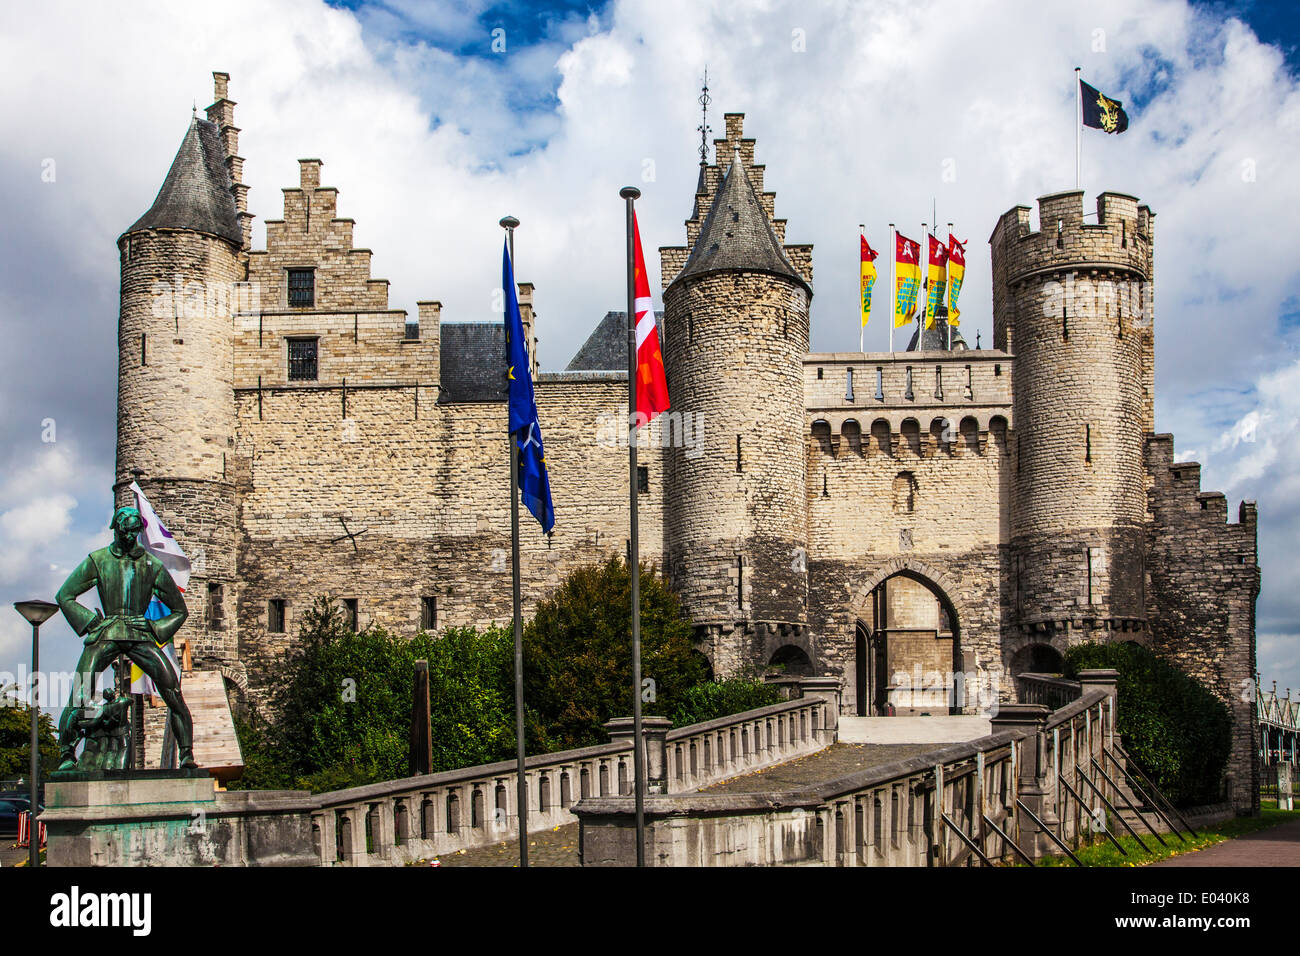 Il sistema Het Steen o castello di pietra, una fortezza medievale sulle rive del fiume Schelda ad Anversa, in Belgio. Foto Stock